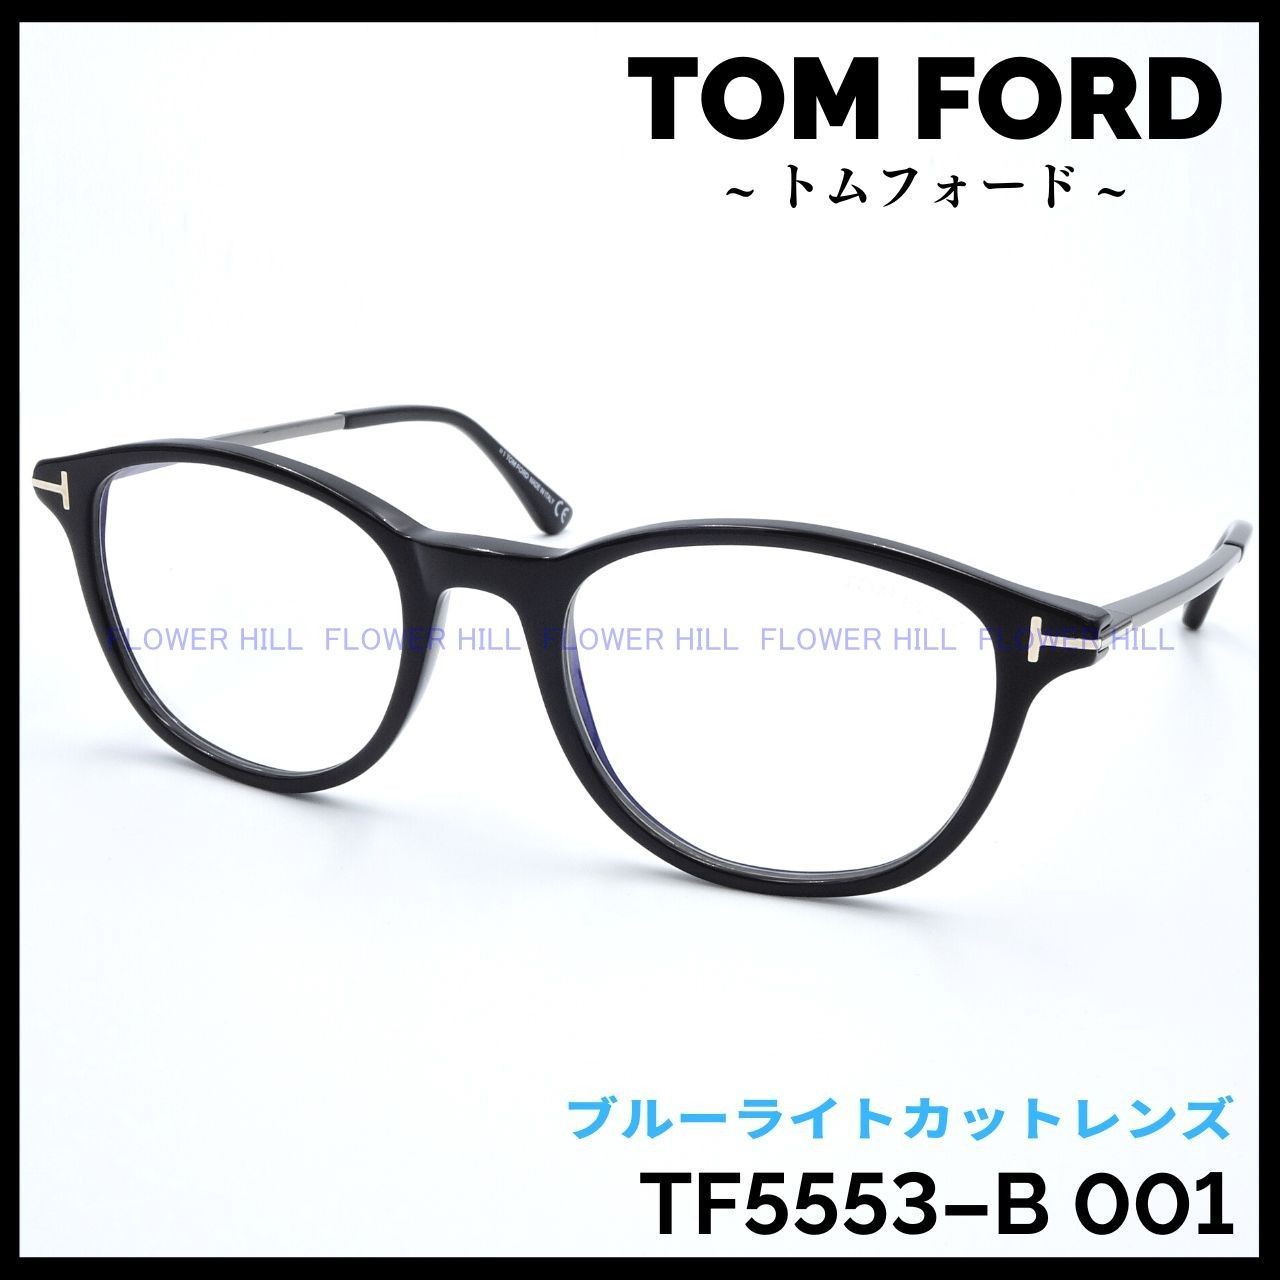 新品 トムフォード メガネフレーム ボストン ブラック TF5553-B 001FlowerHill